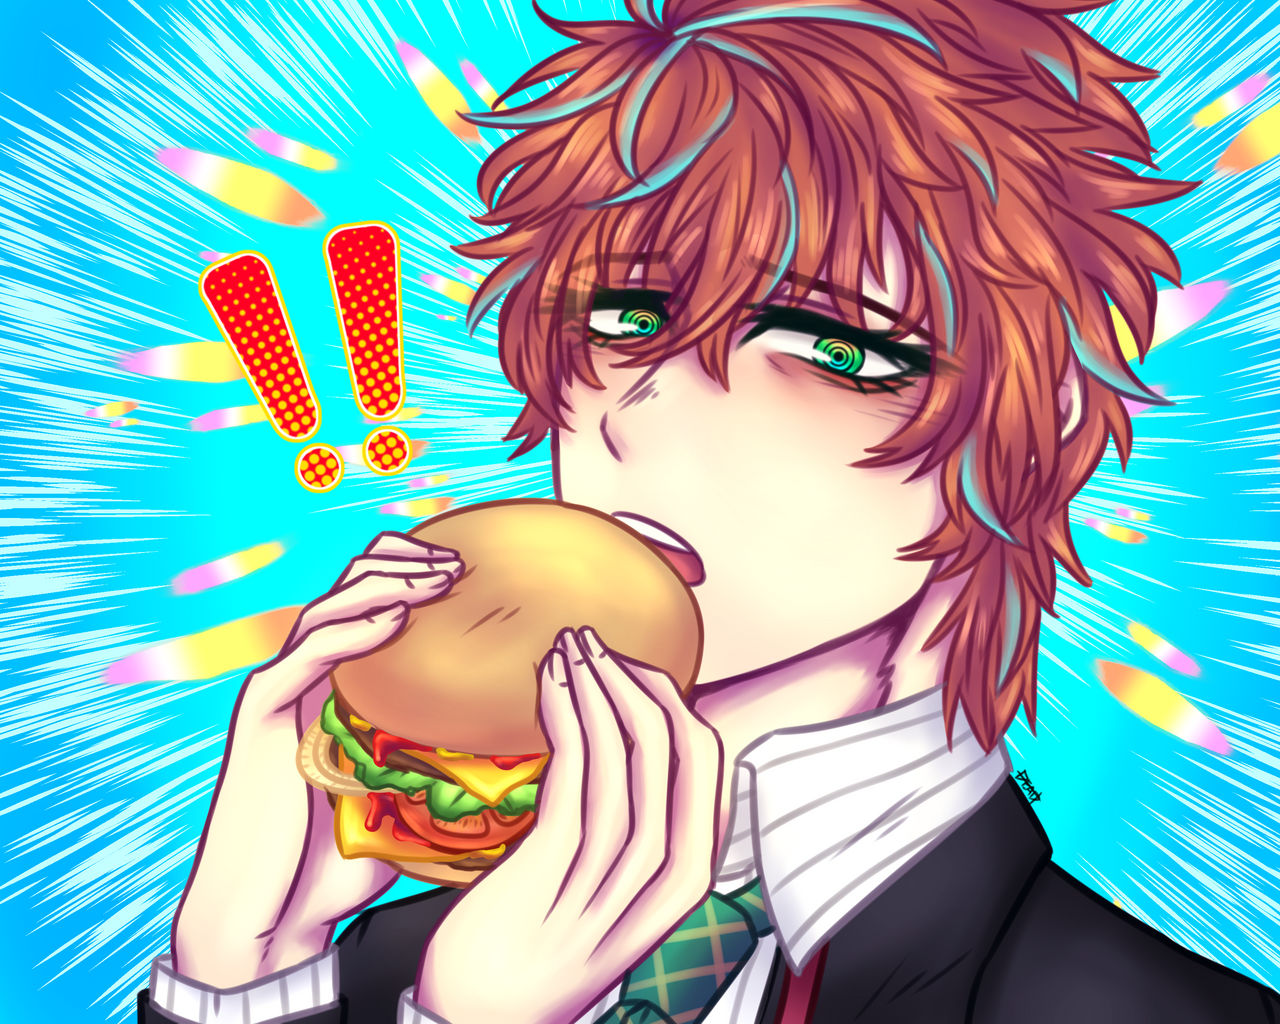 doppo_eat_cheeseburger_by_deadrkgk_ddkw6